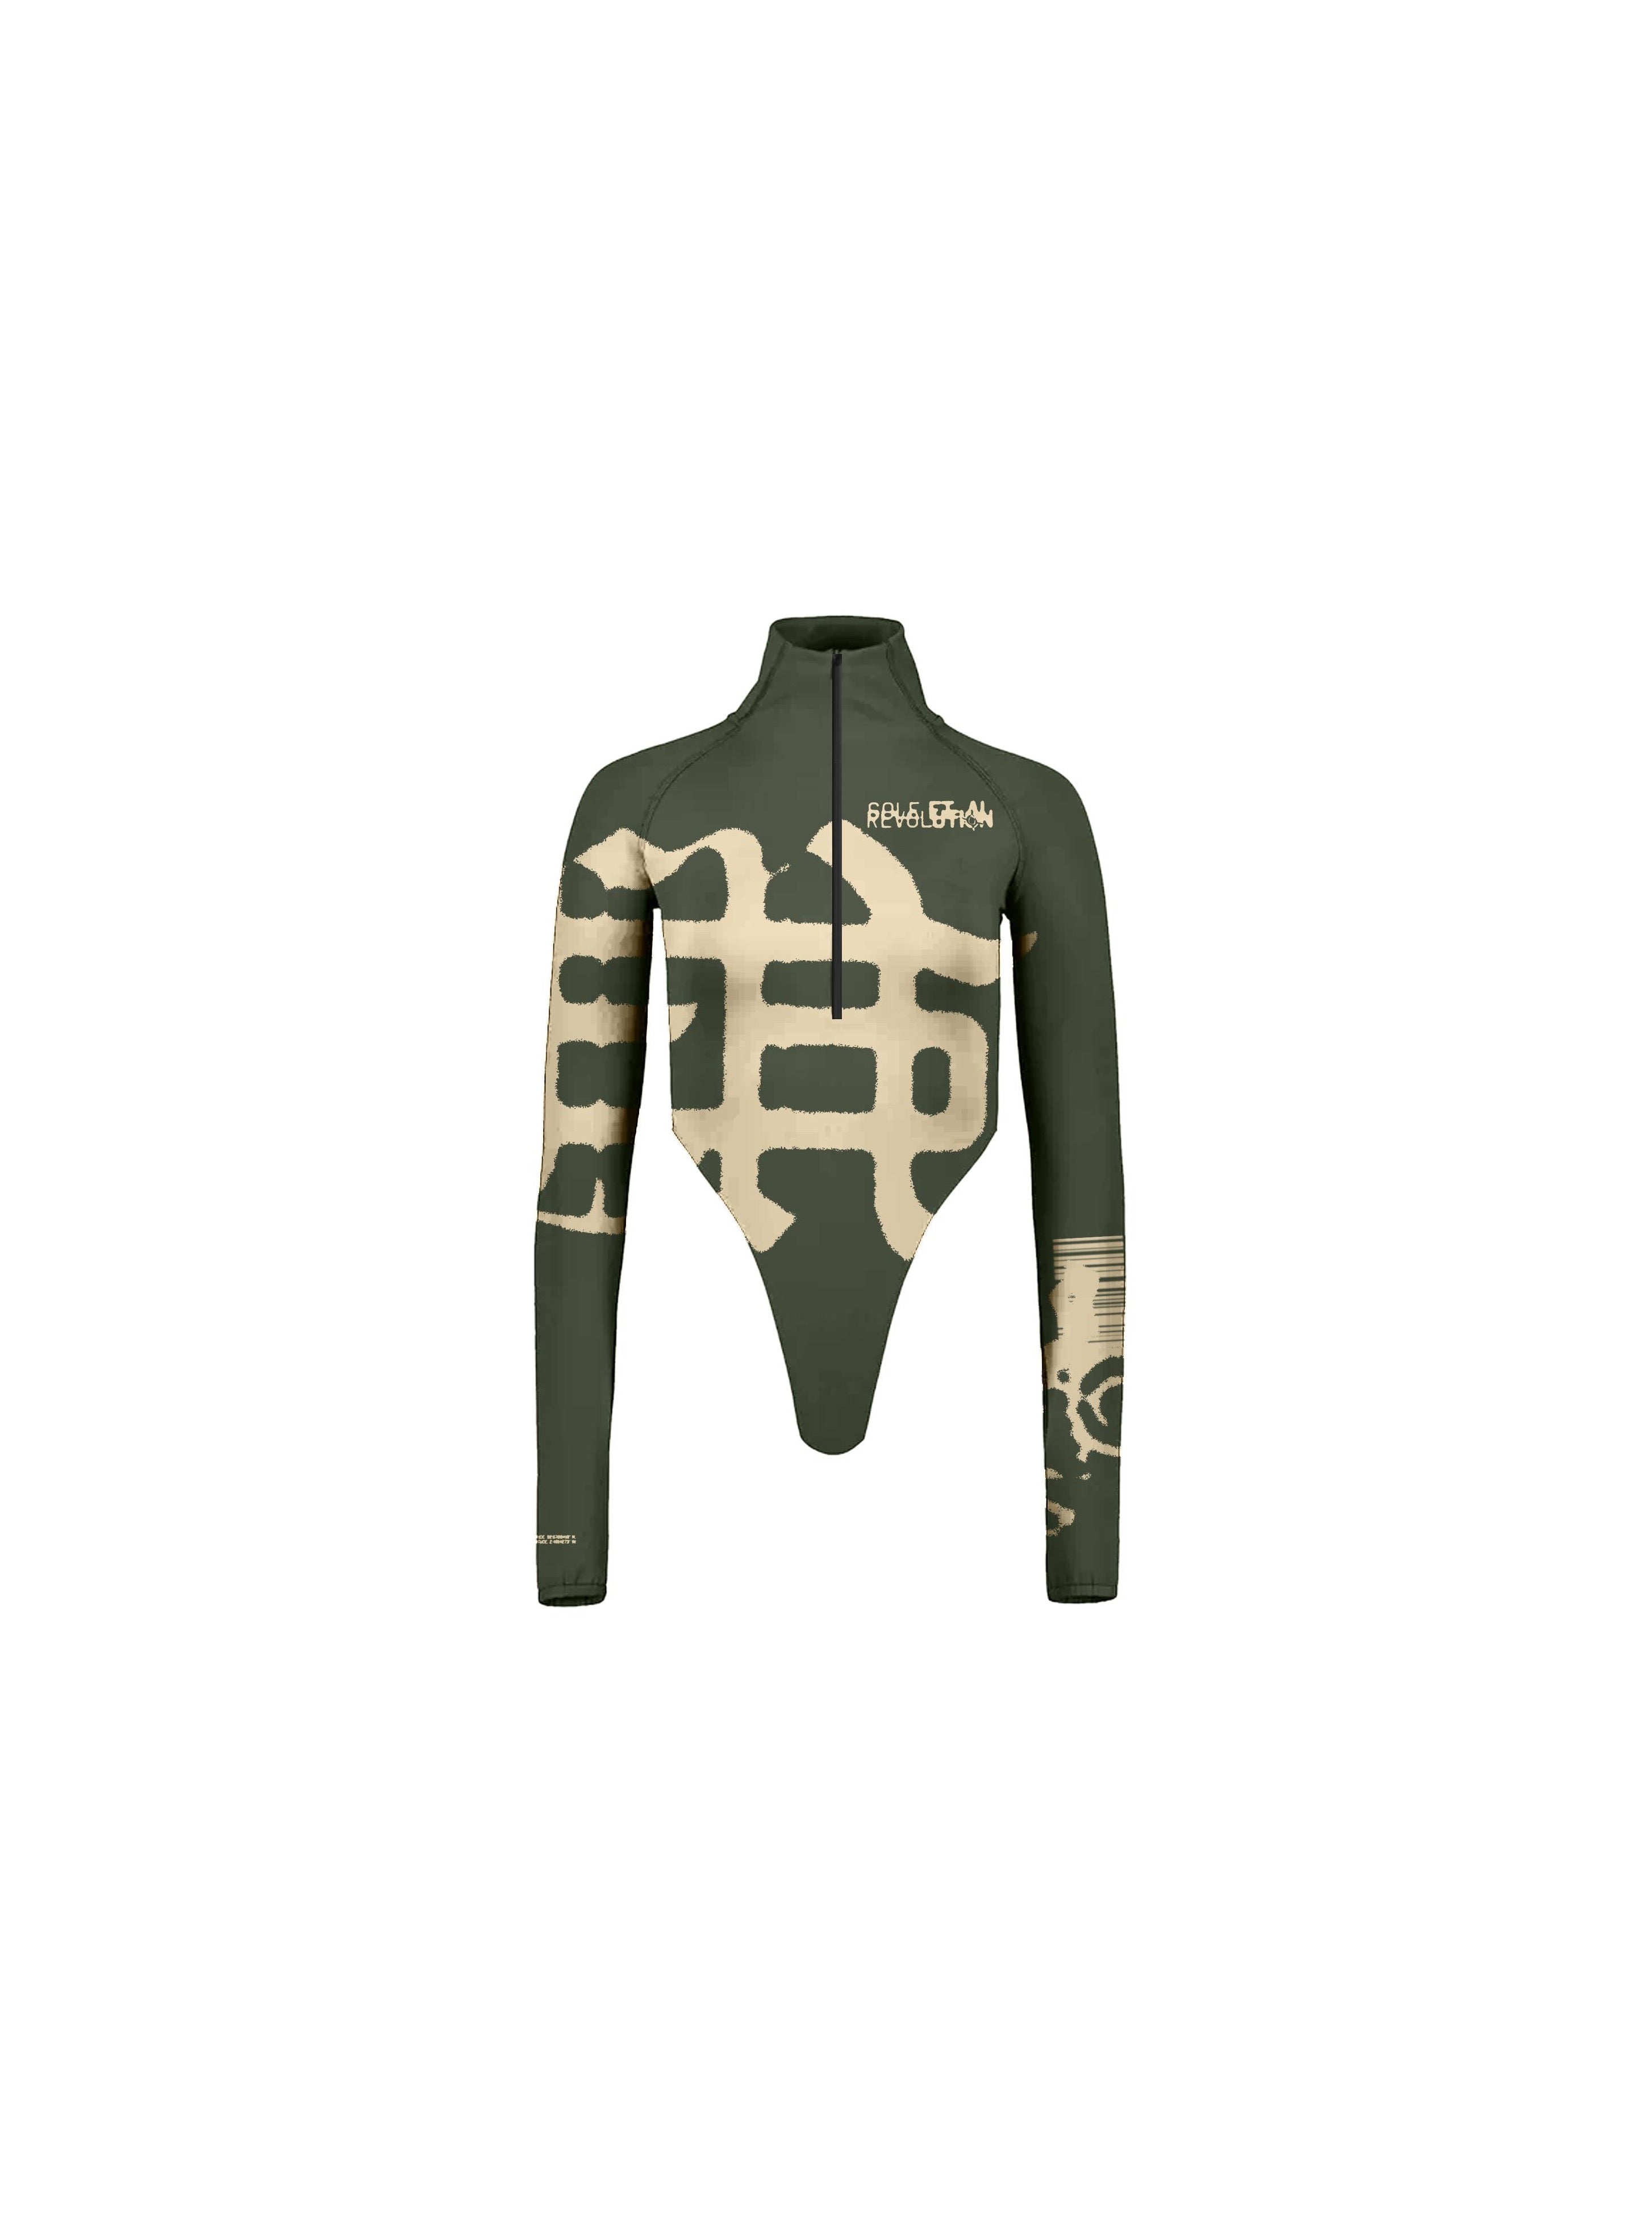 Sole et. Al Revølutiøn Bodysuit med dragkedja : Militärgrön / Sand